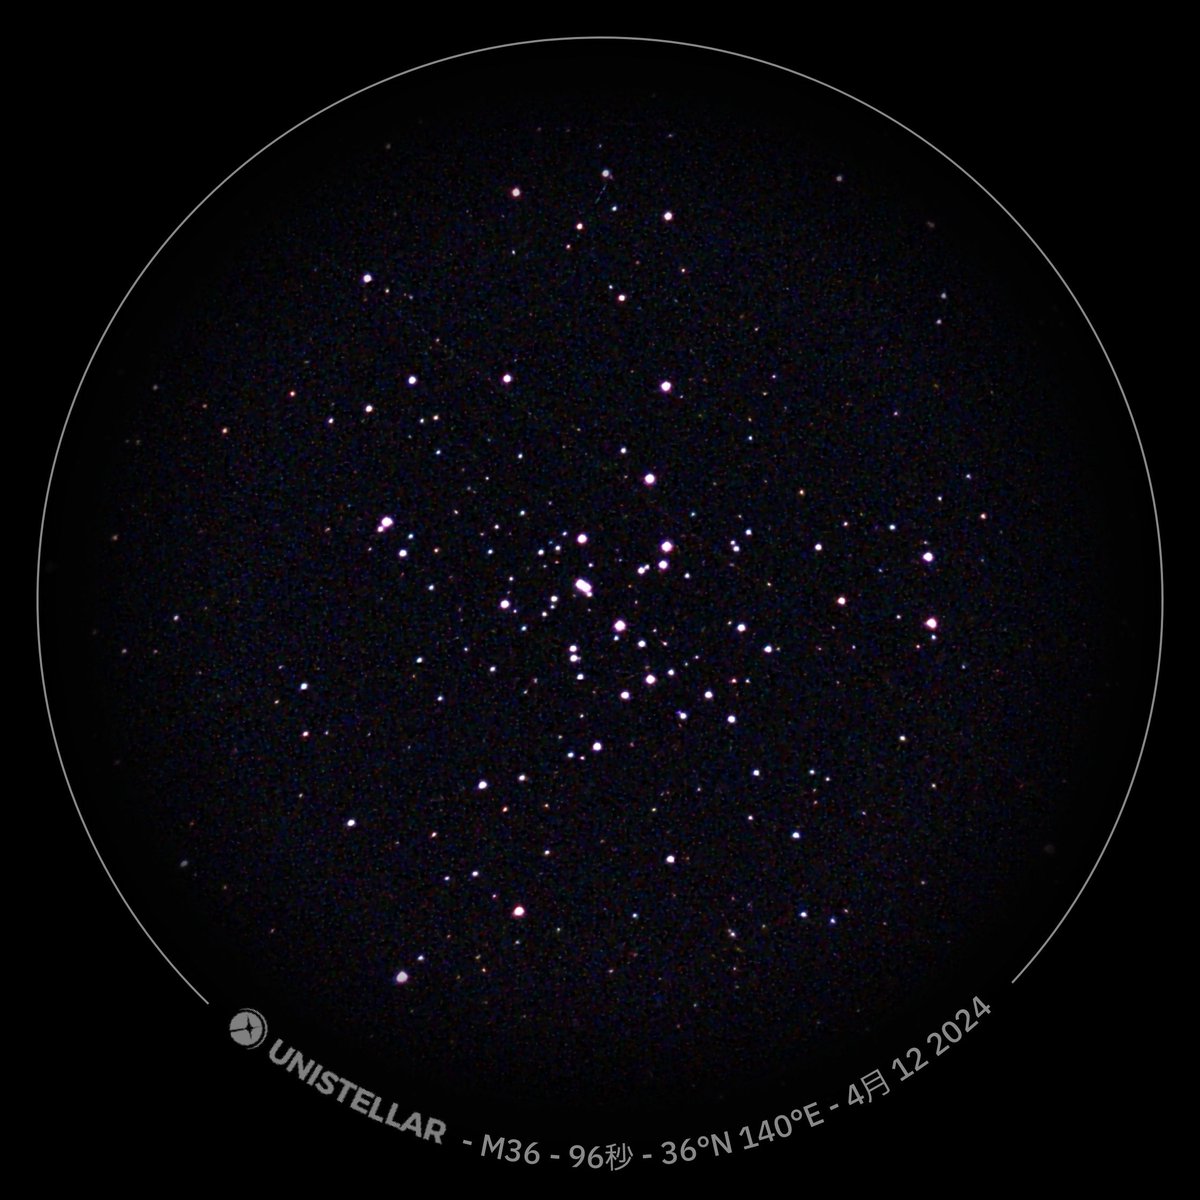 散開星団: M36 Pinwheel Cluster
4s x 40, CLSフィルター
4枚目は無加工のエンハンスド・ビジョン(スタンプあり)画像
#eVscope